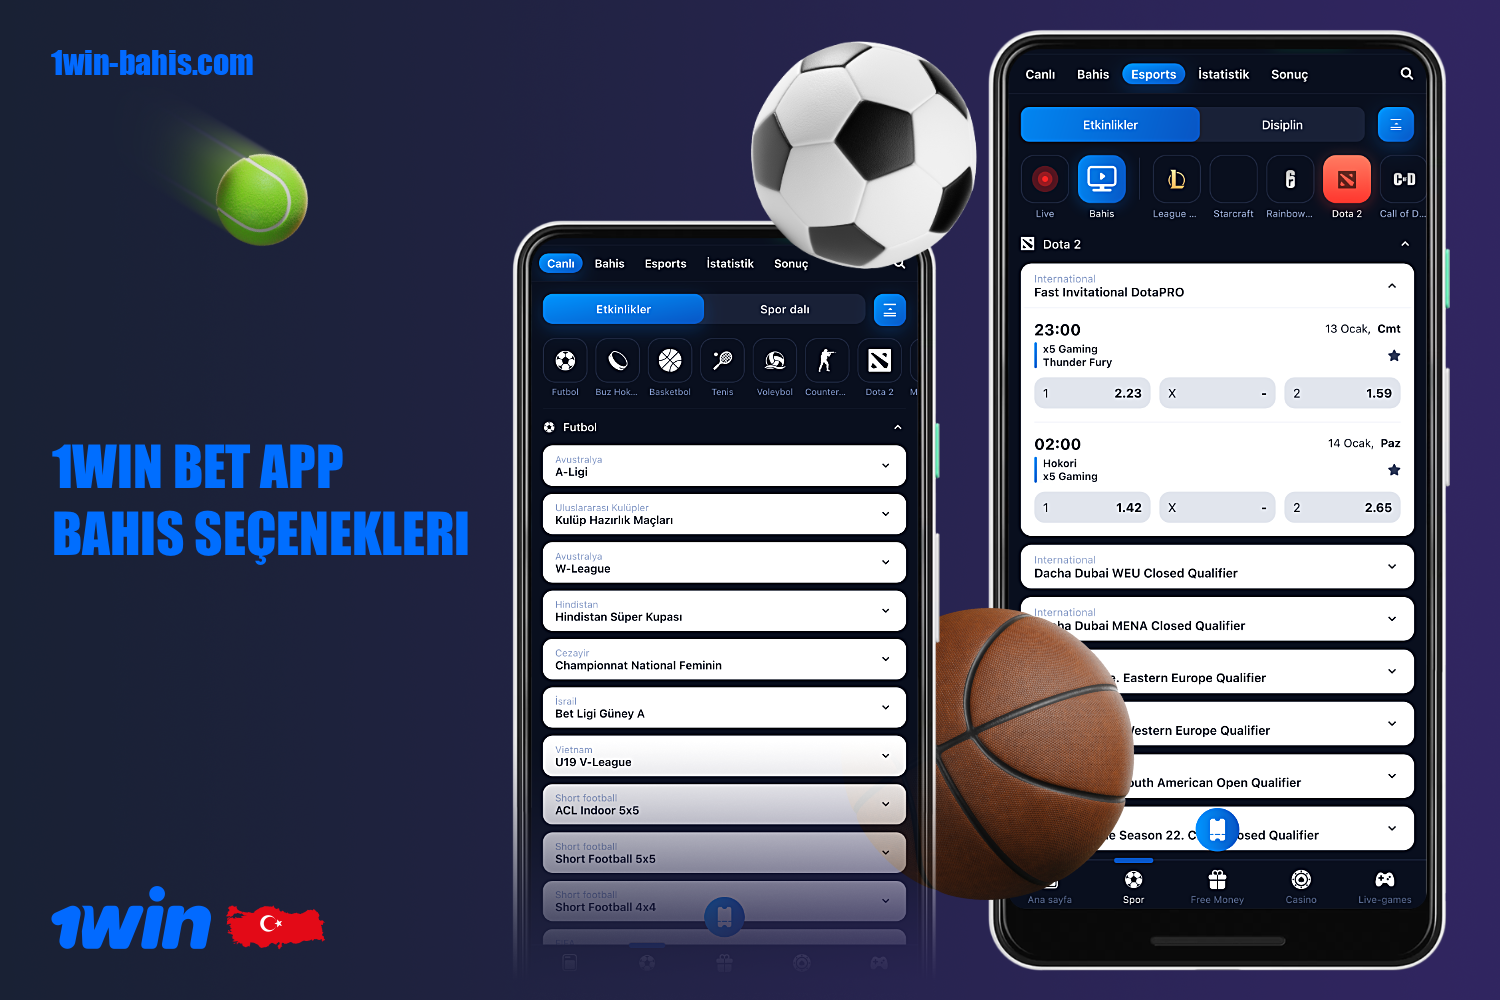 Türkiye'deki kullanıcılar 1win mobil uygulamasını kullanarak popüler spor dallarında bahis oynayabilir